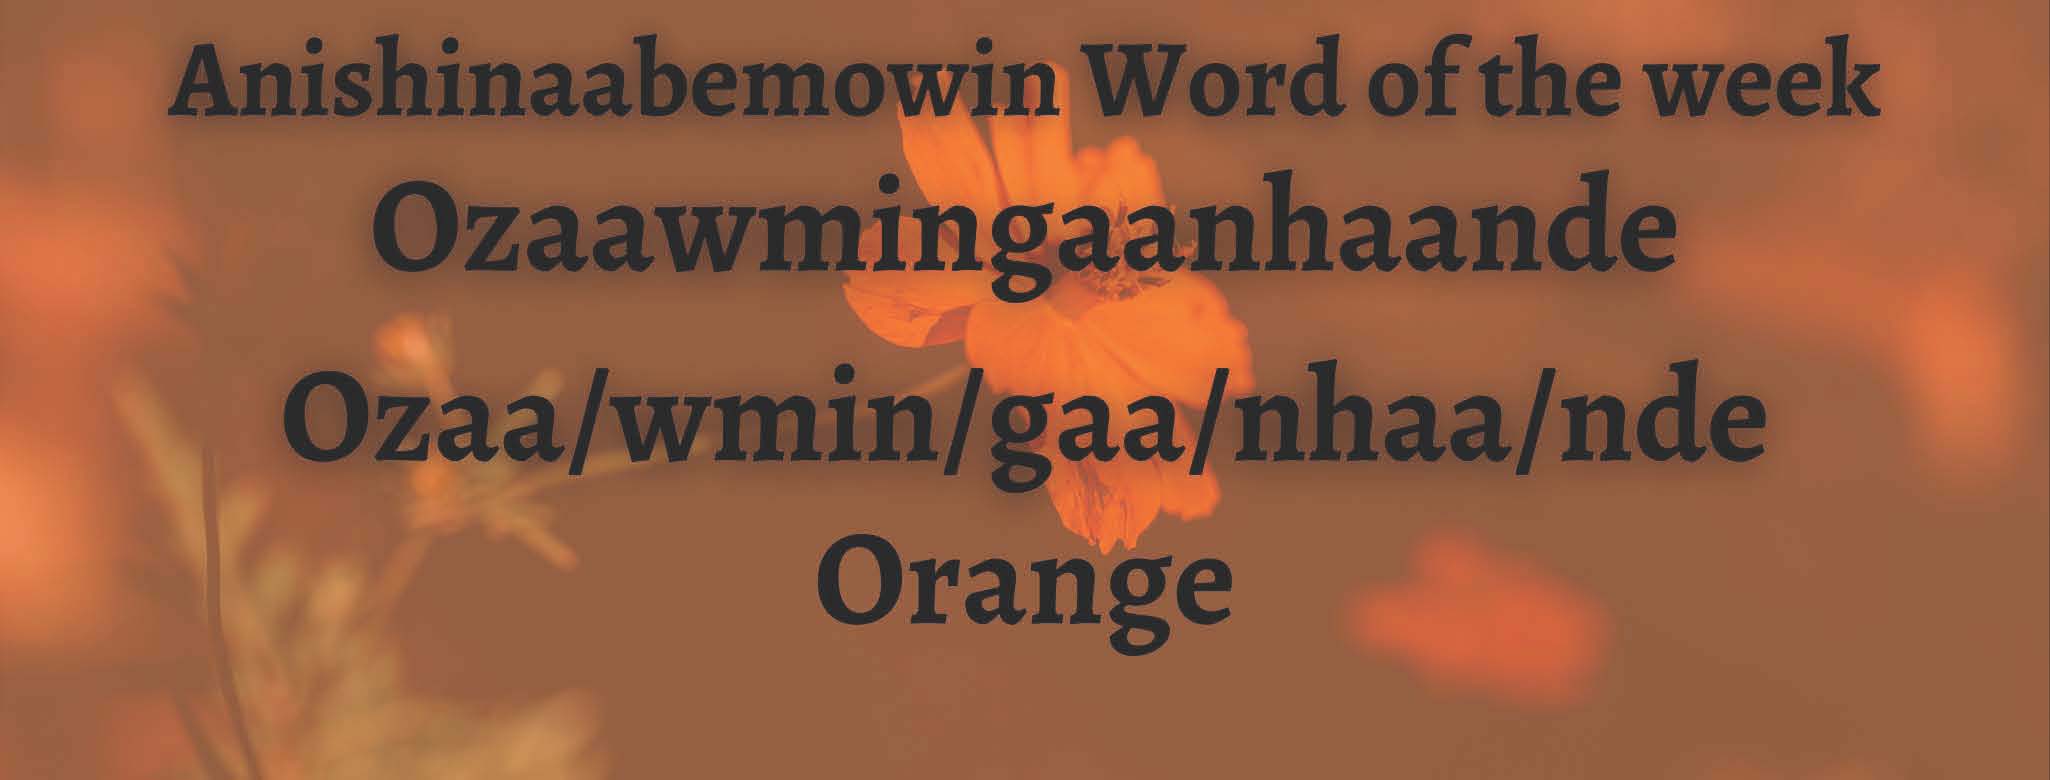 Anishinaabemowin Word of the week Ozaawmingaanhaande Orange